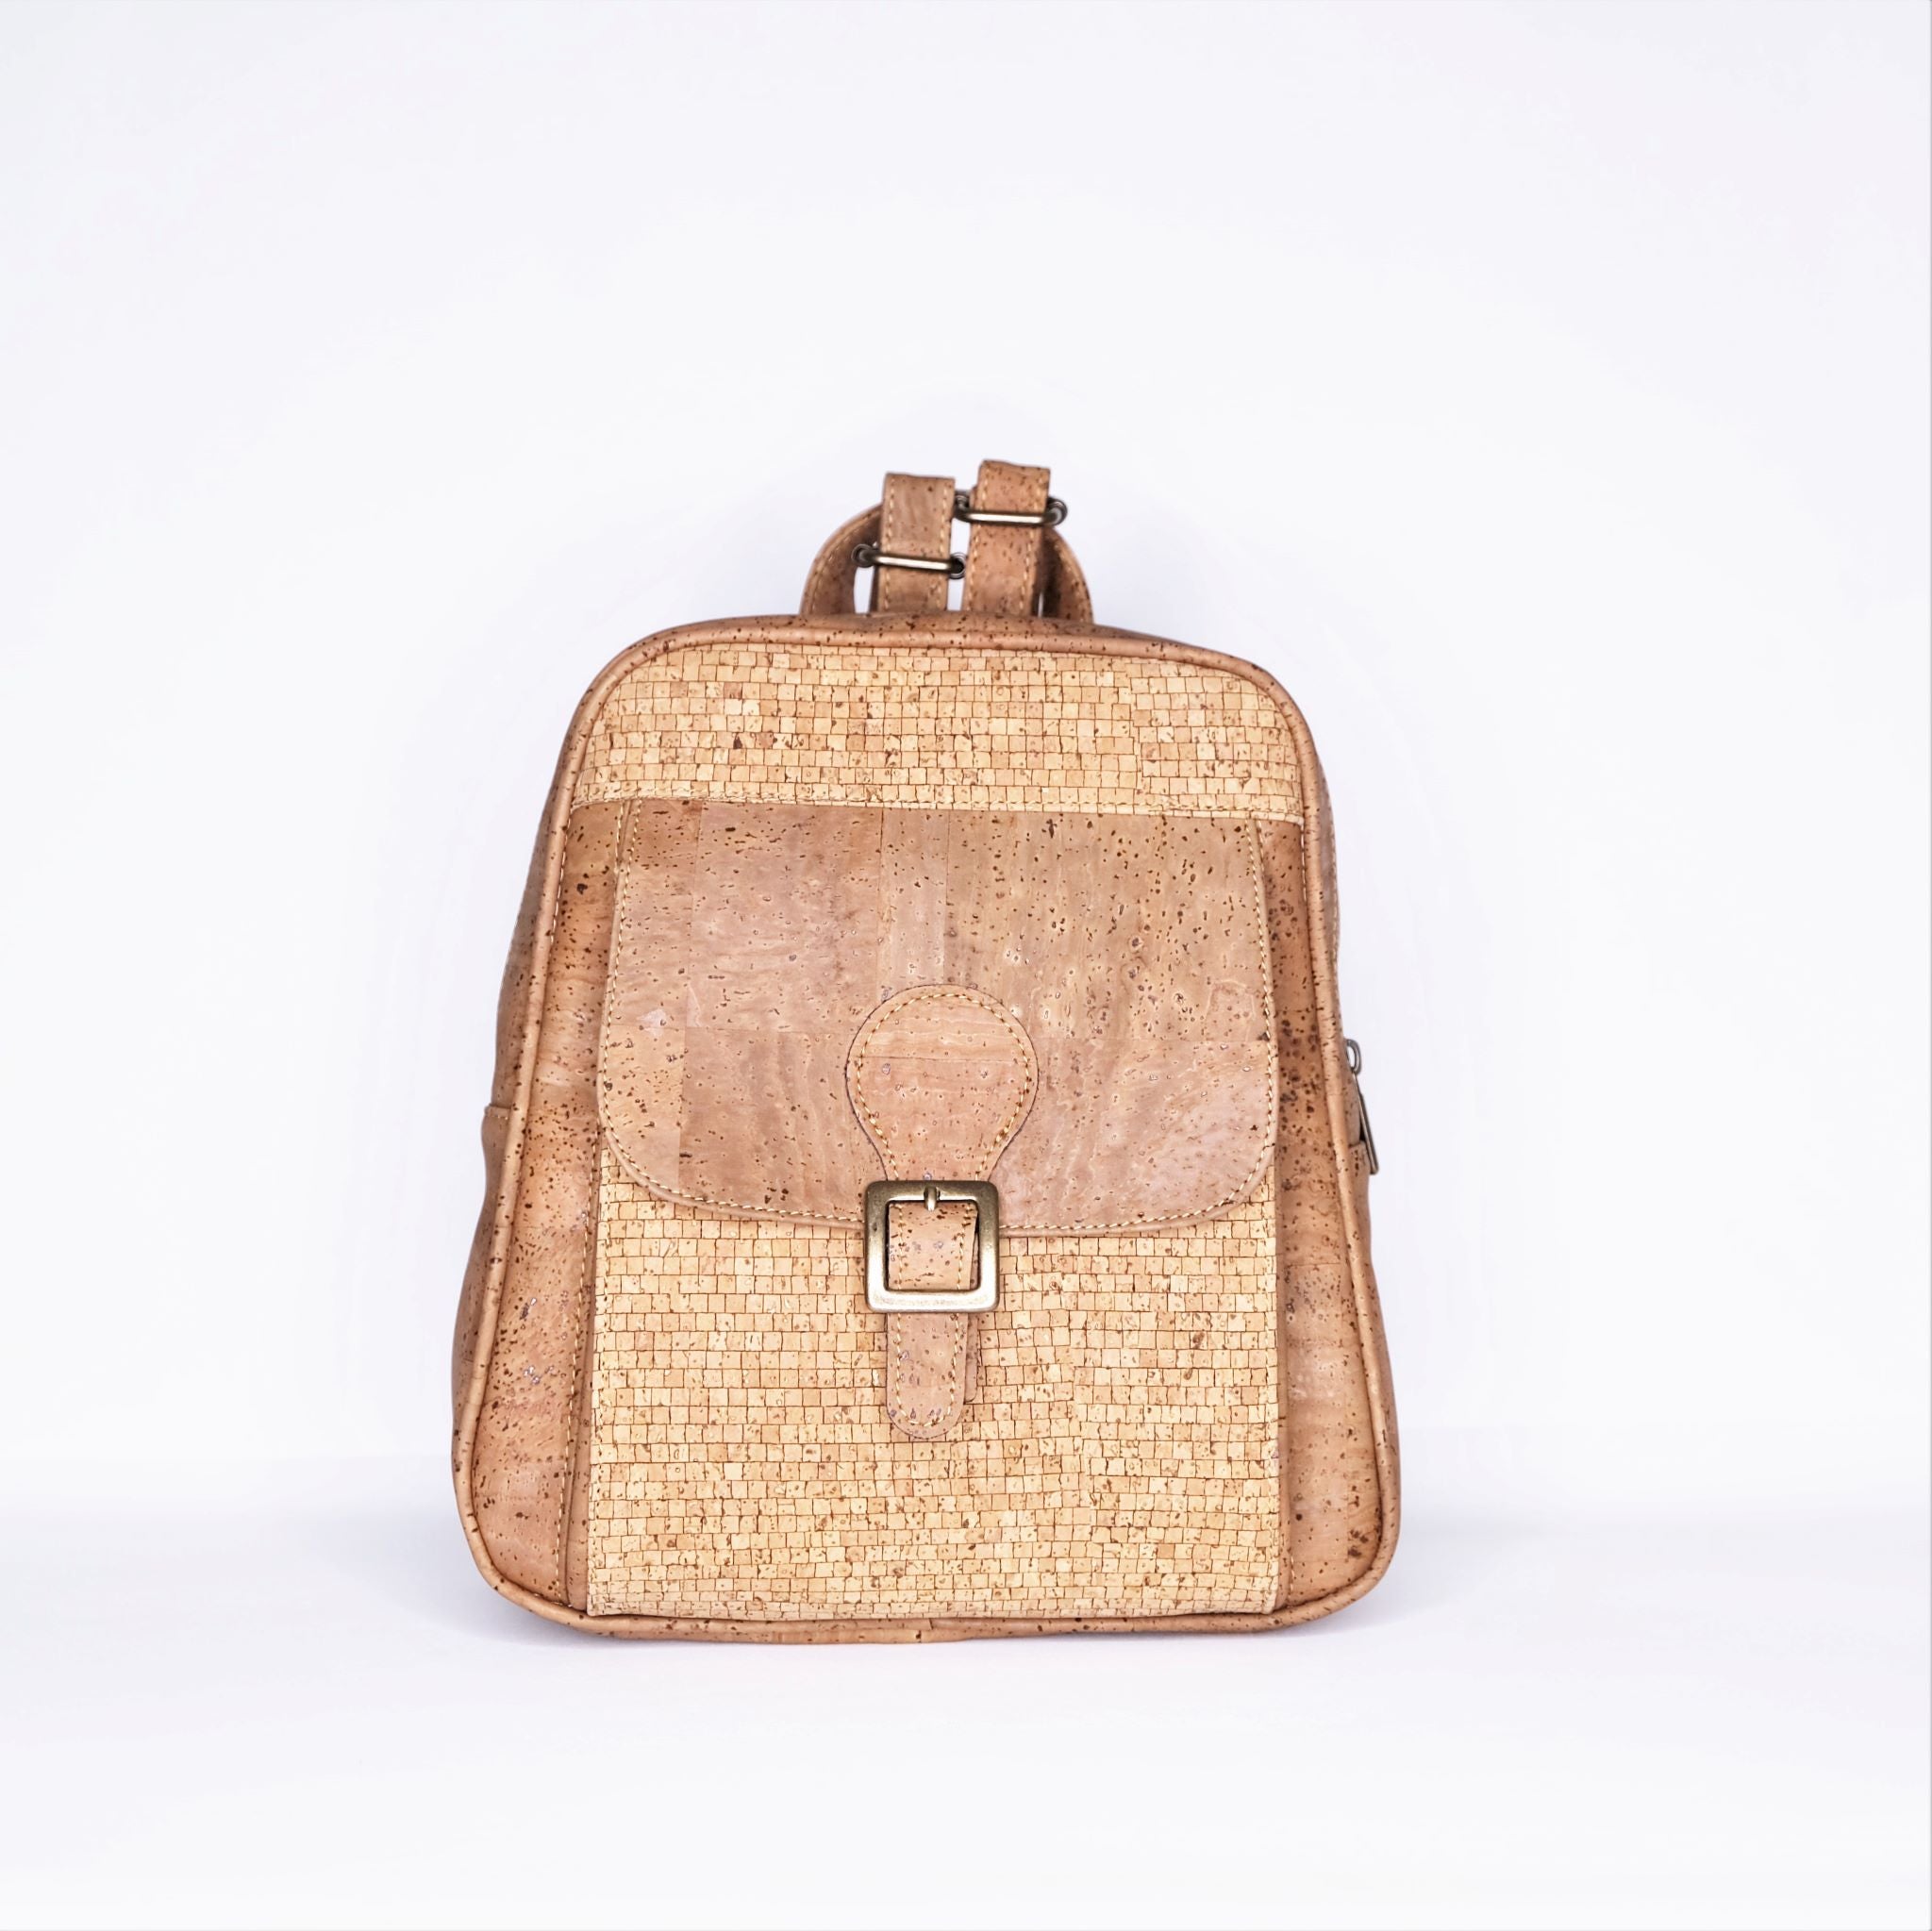 Túi đeo chéo nữ phối khóa - SMALL CROSSBODY PURSE - HGcork CK159 HG.CORK -  TÚI VÍ THẮT LƯNG THỜI TRANG VỎ SỒI CORK BỒ ĐÀO NHA